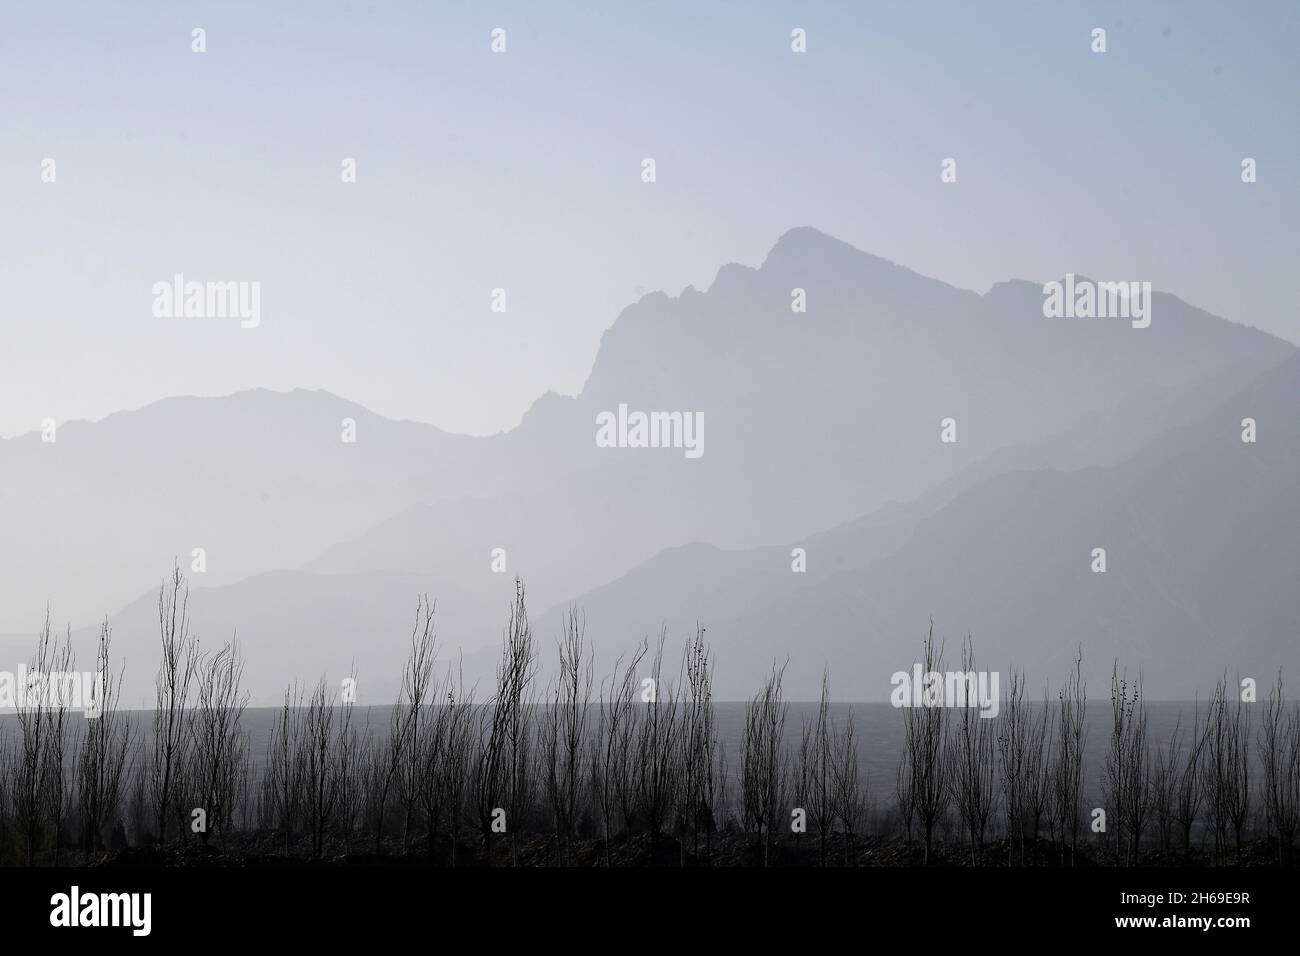 Yinchuan.12 novembre 2021.La photo prise le 12 novembre 2021 montre une vue sur la montagne Helan, dans la région autonome de Ningxia hui, dans le nord-ouest de la Chine.Crédit: Wang Peng/Xinhua/Alay Live News Banque D'Images